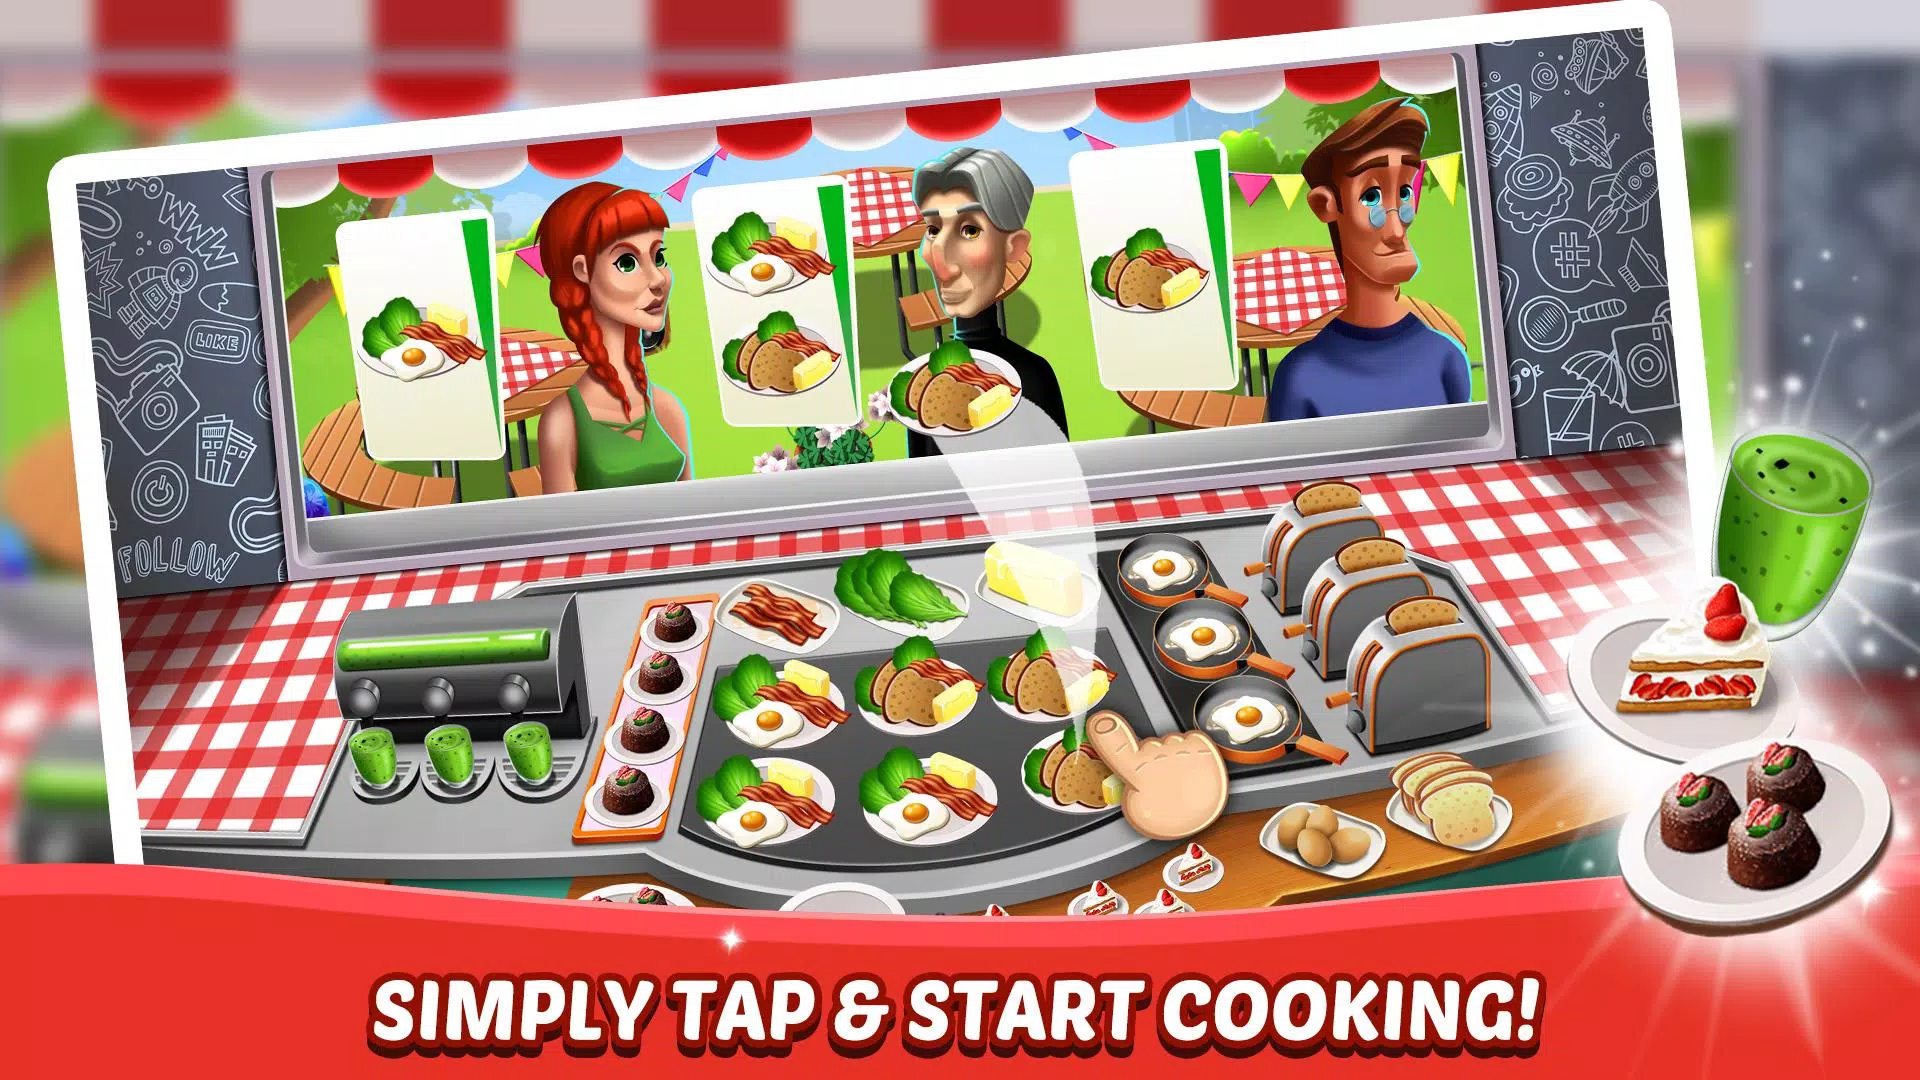 Equipe de Culinária - Jogos de Restaurantes - Baixar APK para Android